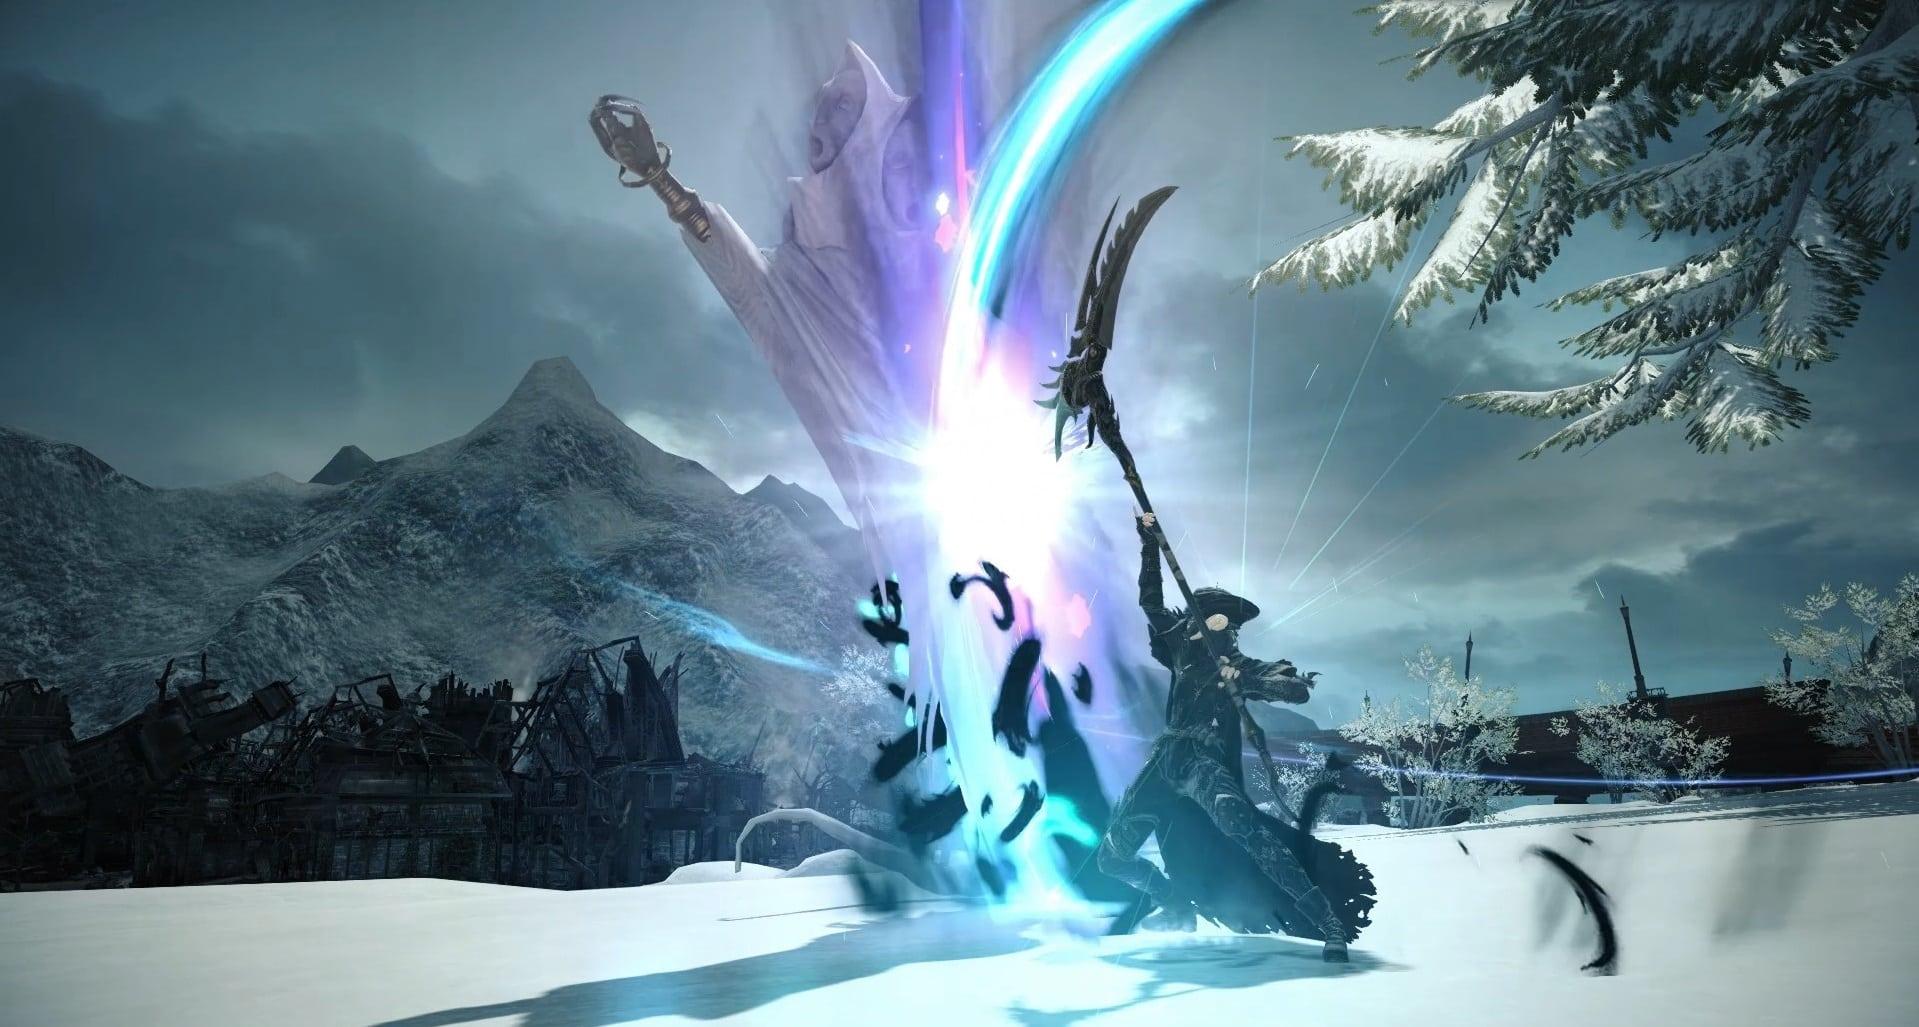 FFXIV screenshot showing a Reaper in combat